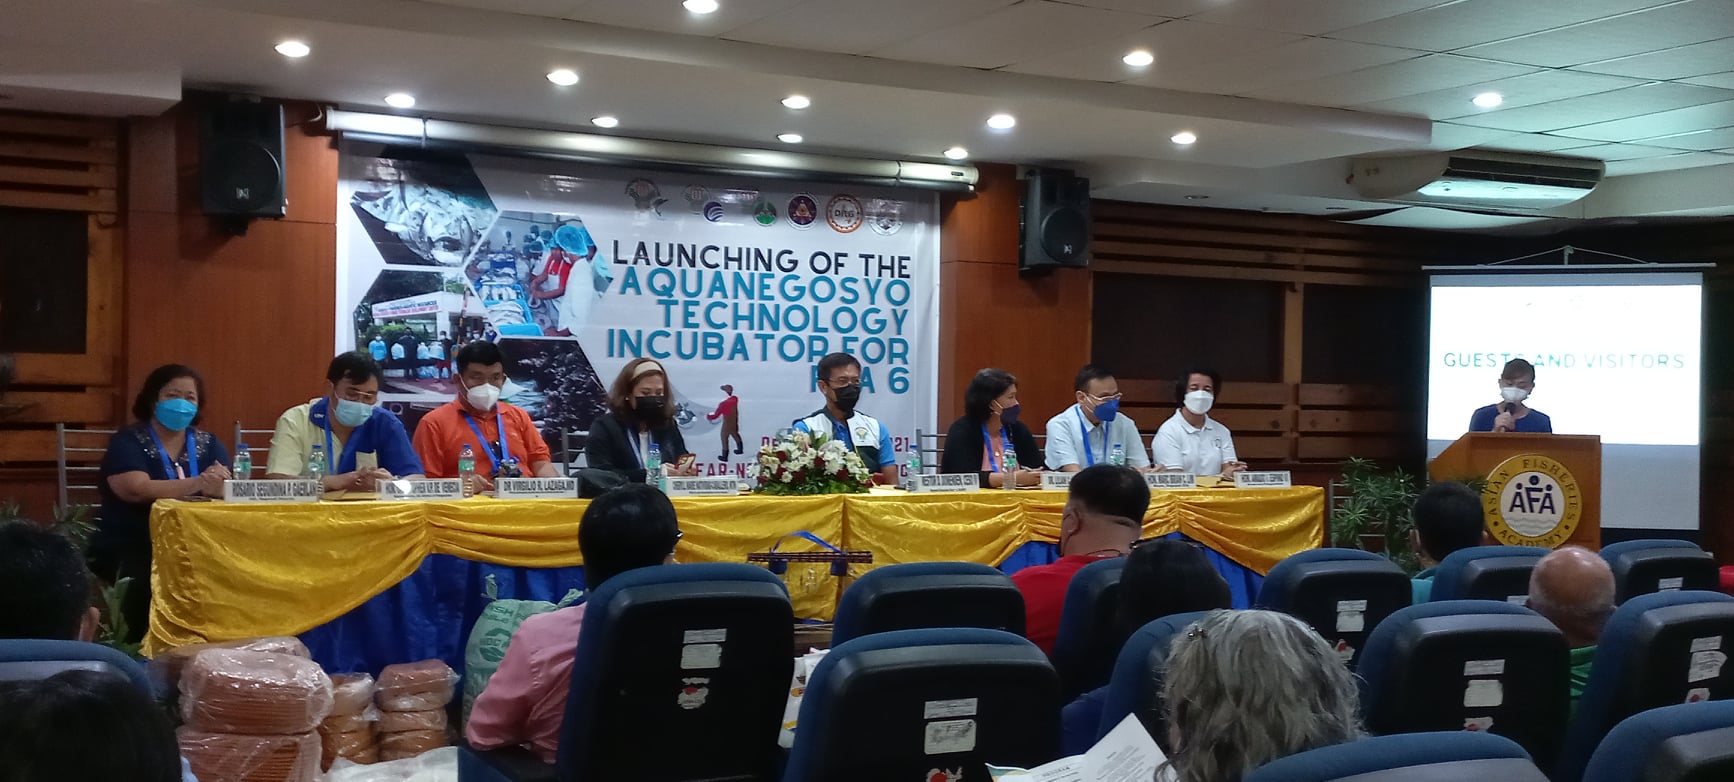 DA-BFAR launches Aquanegosyo Technology Incubator in Pangasinan